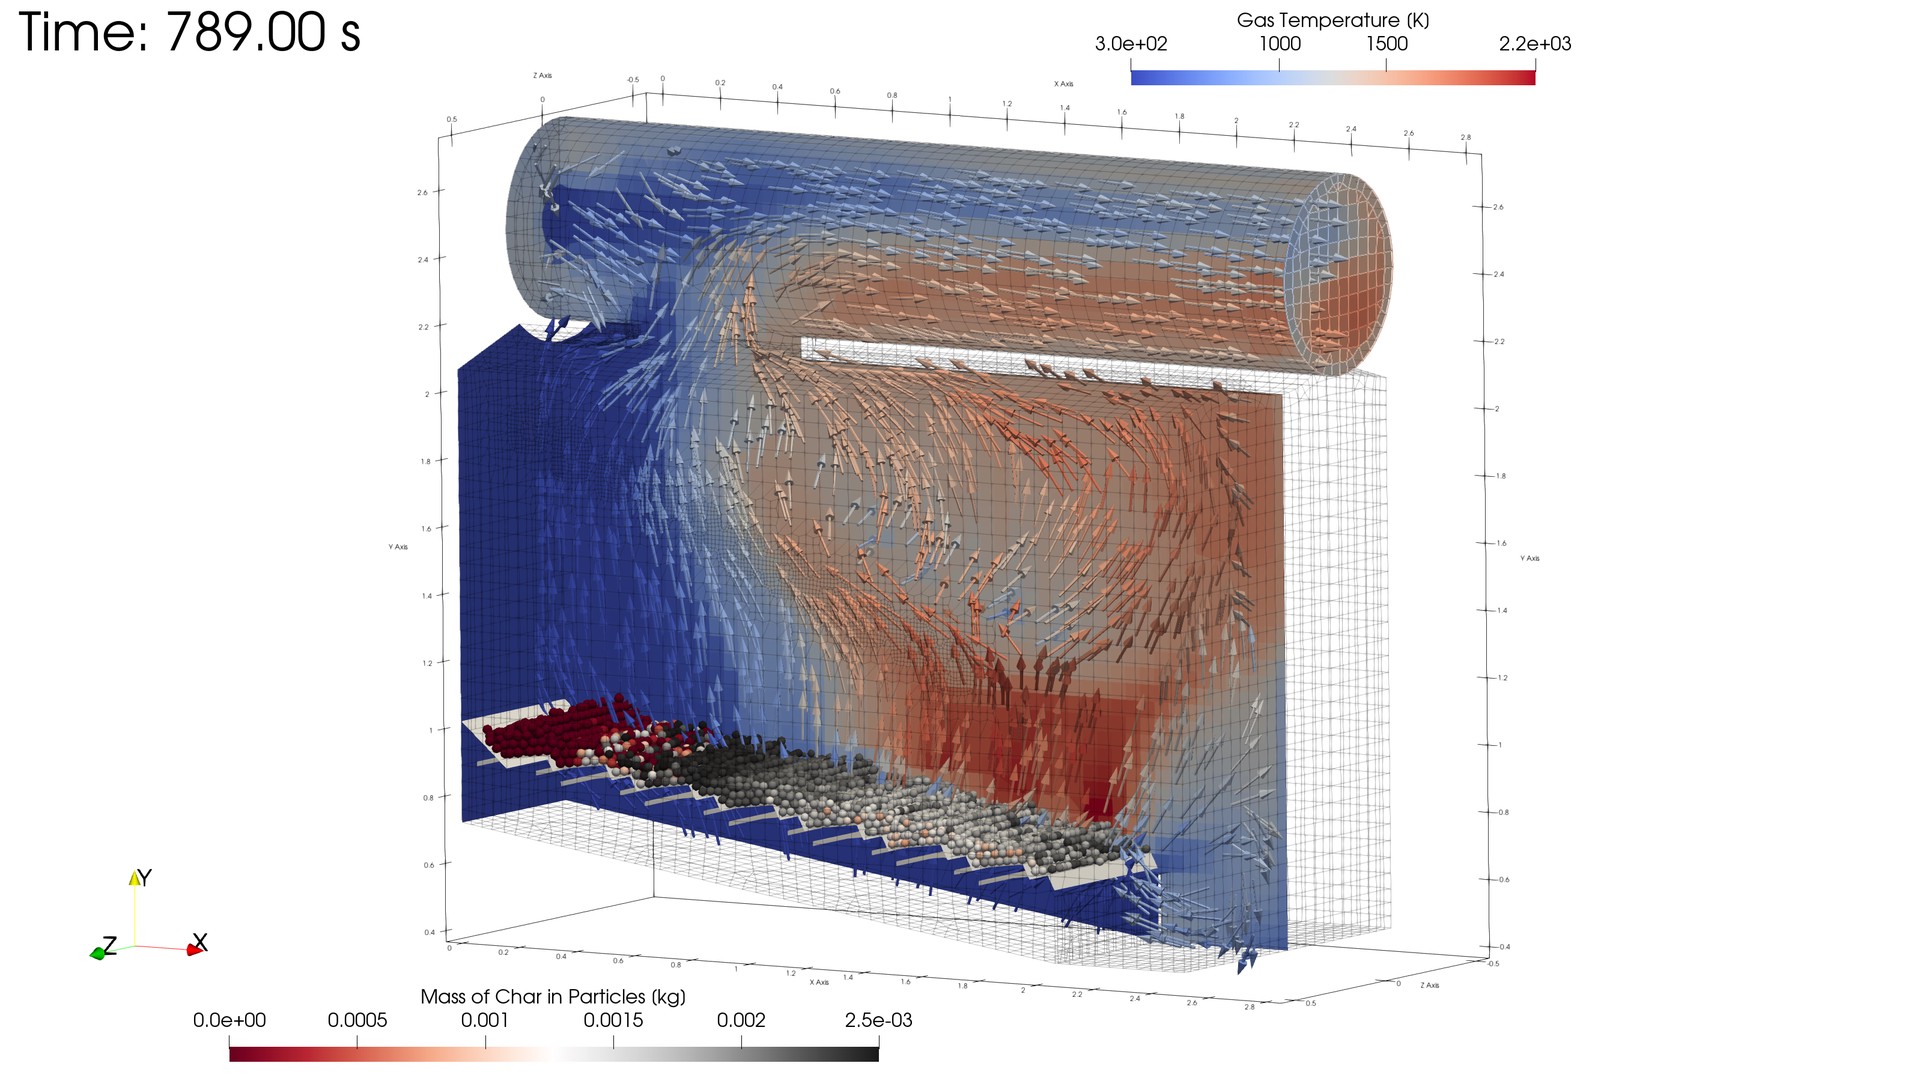 Multi-Physics Biomass Furnace Simulation on HPC using XDEM+OpenFOAM coupling